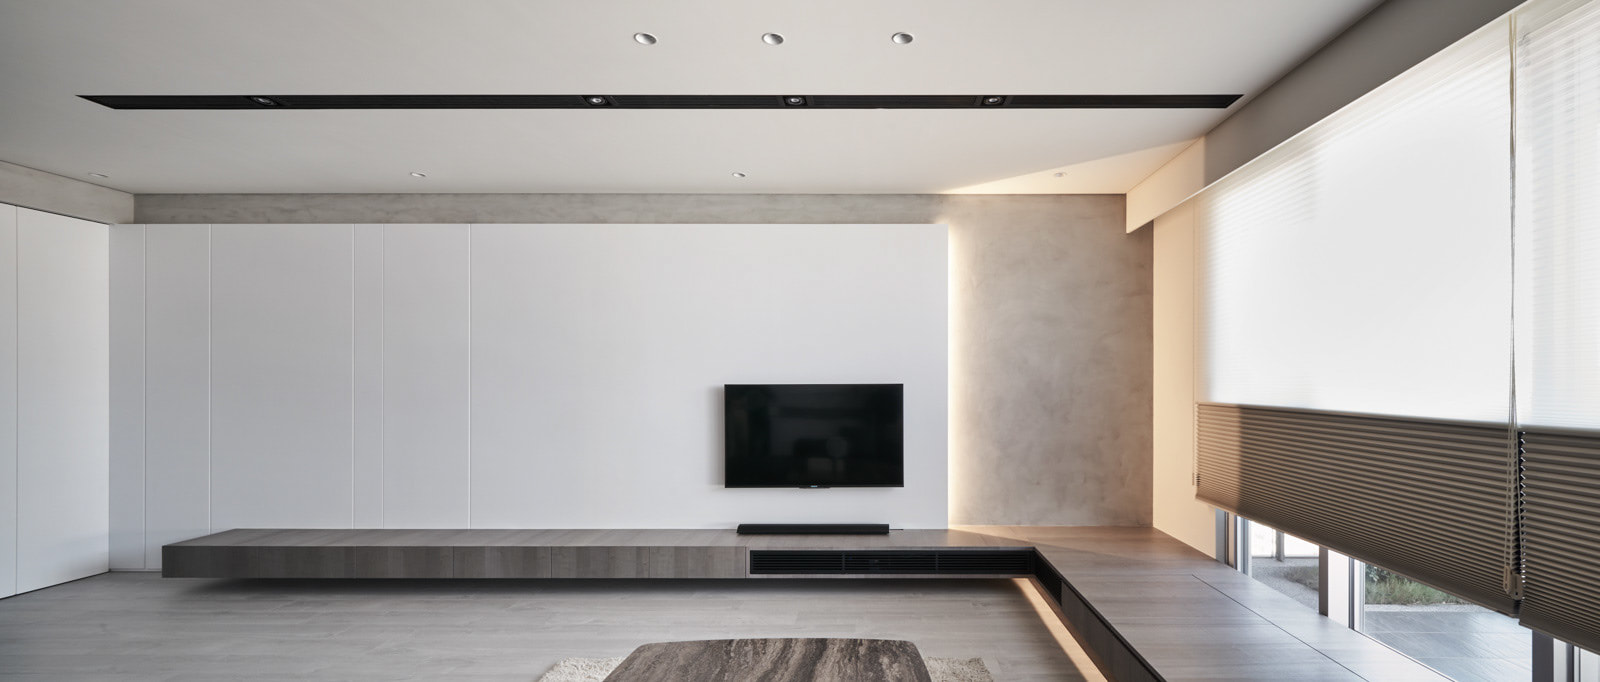 simple living area design